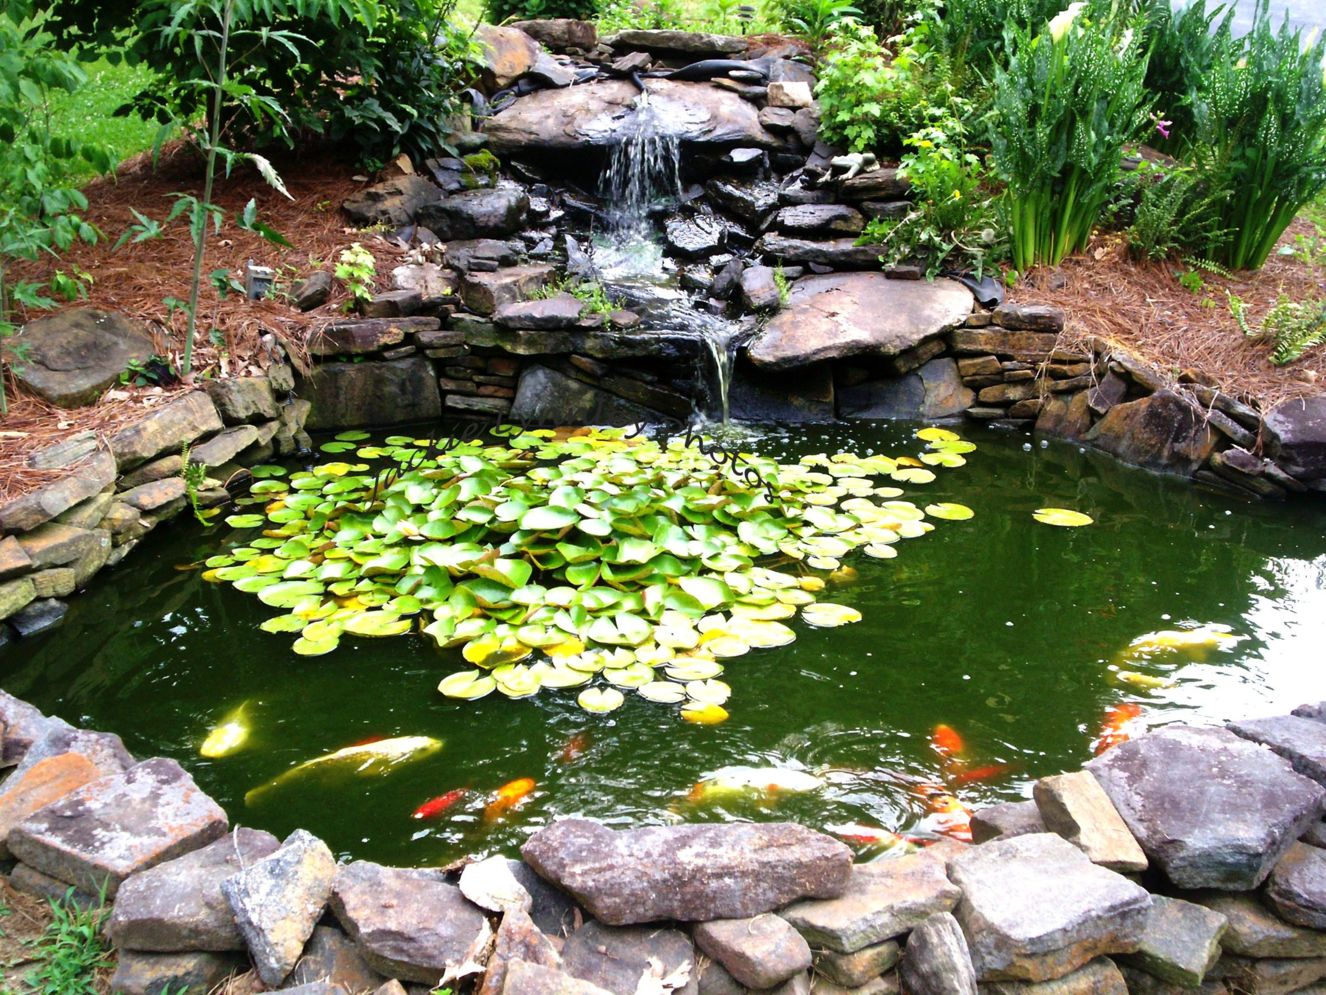 Install a Fish Pond Filter